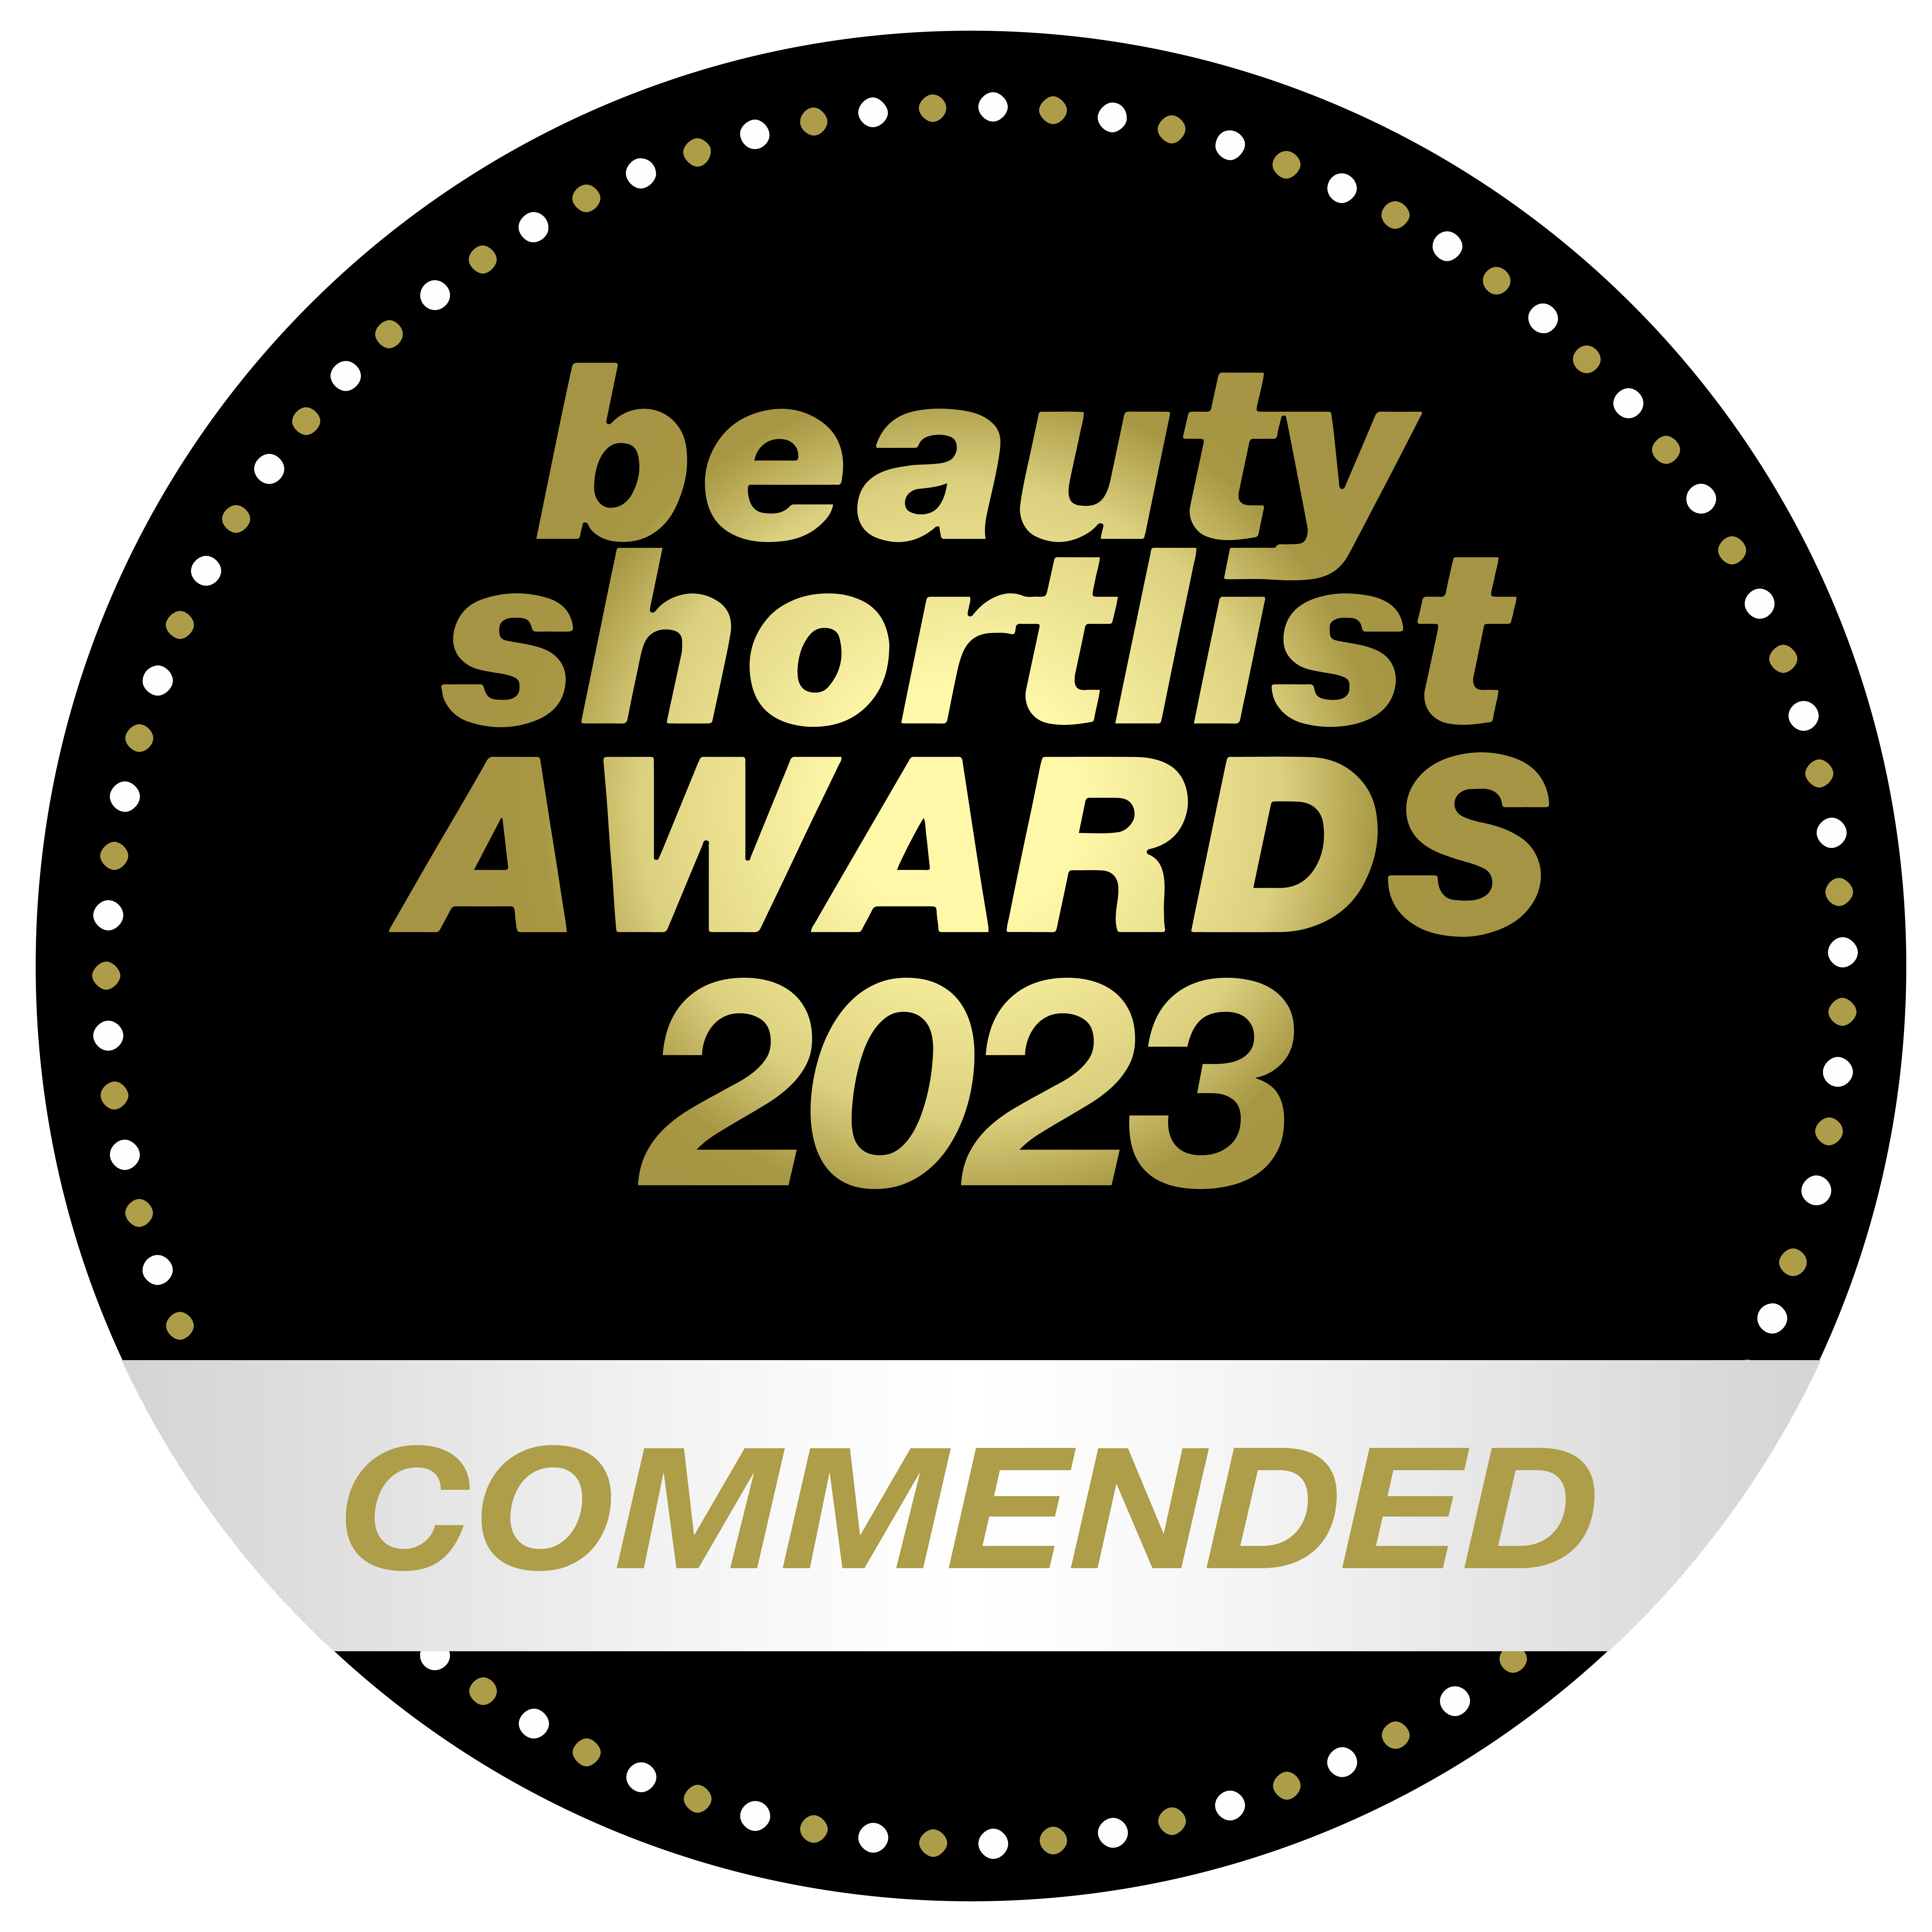 Beauty Shortlist Awards Winners – Commended